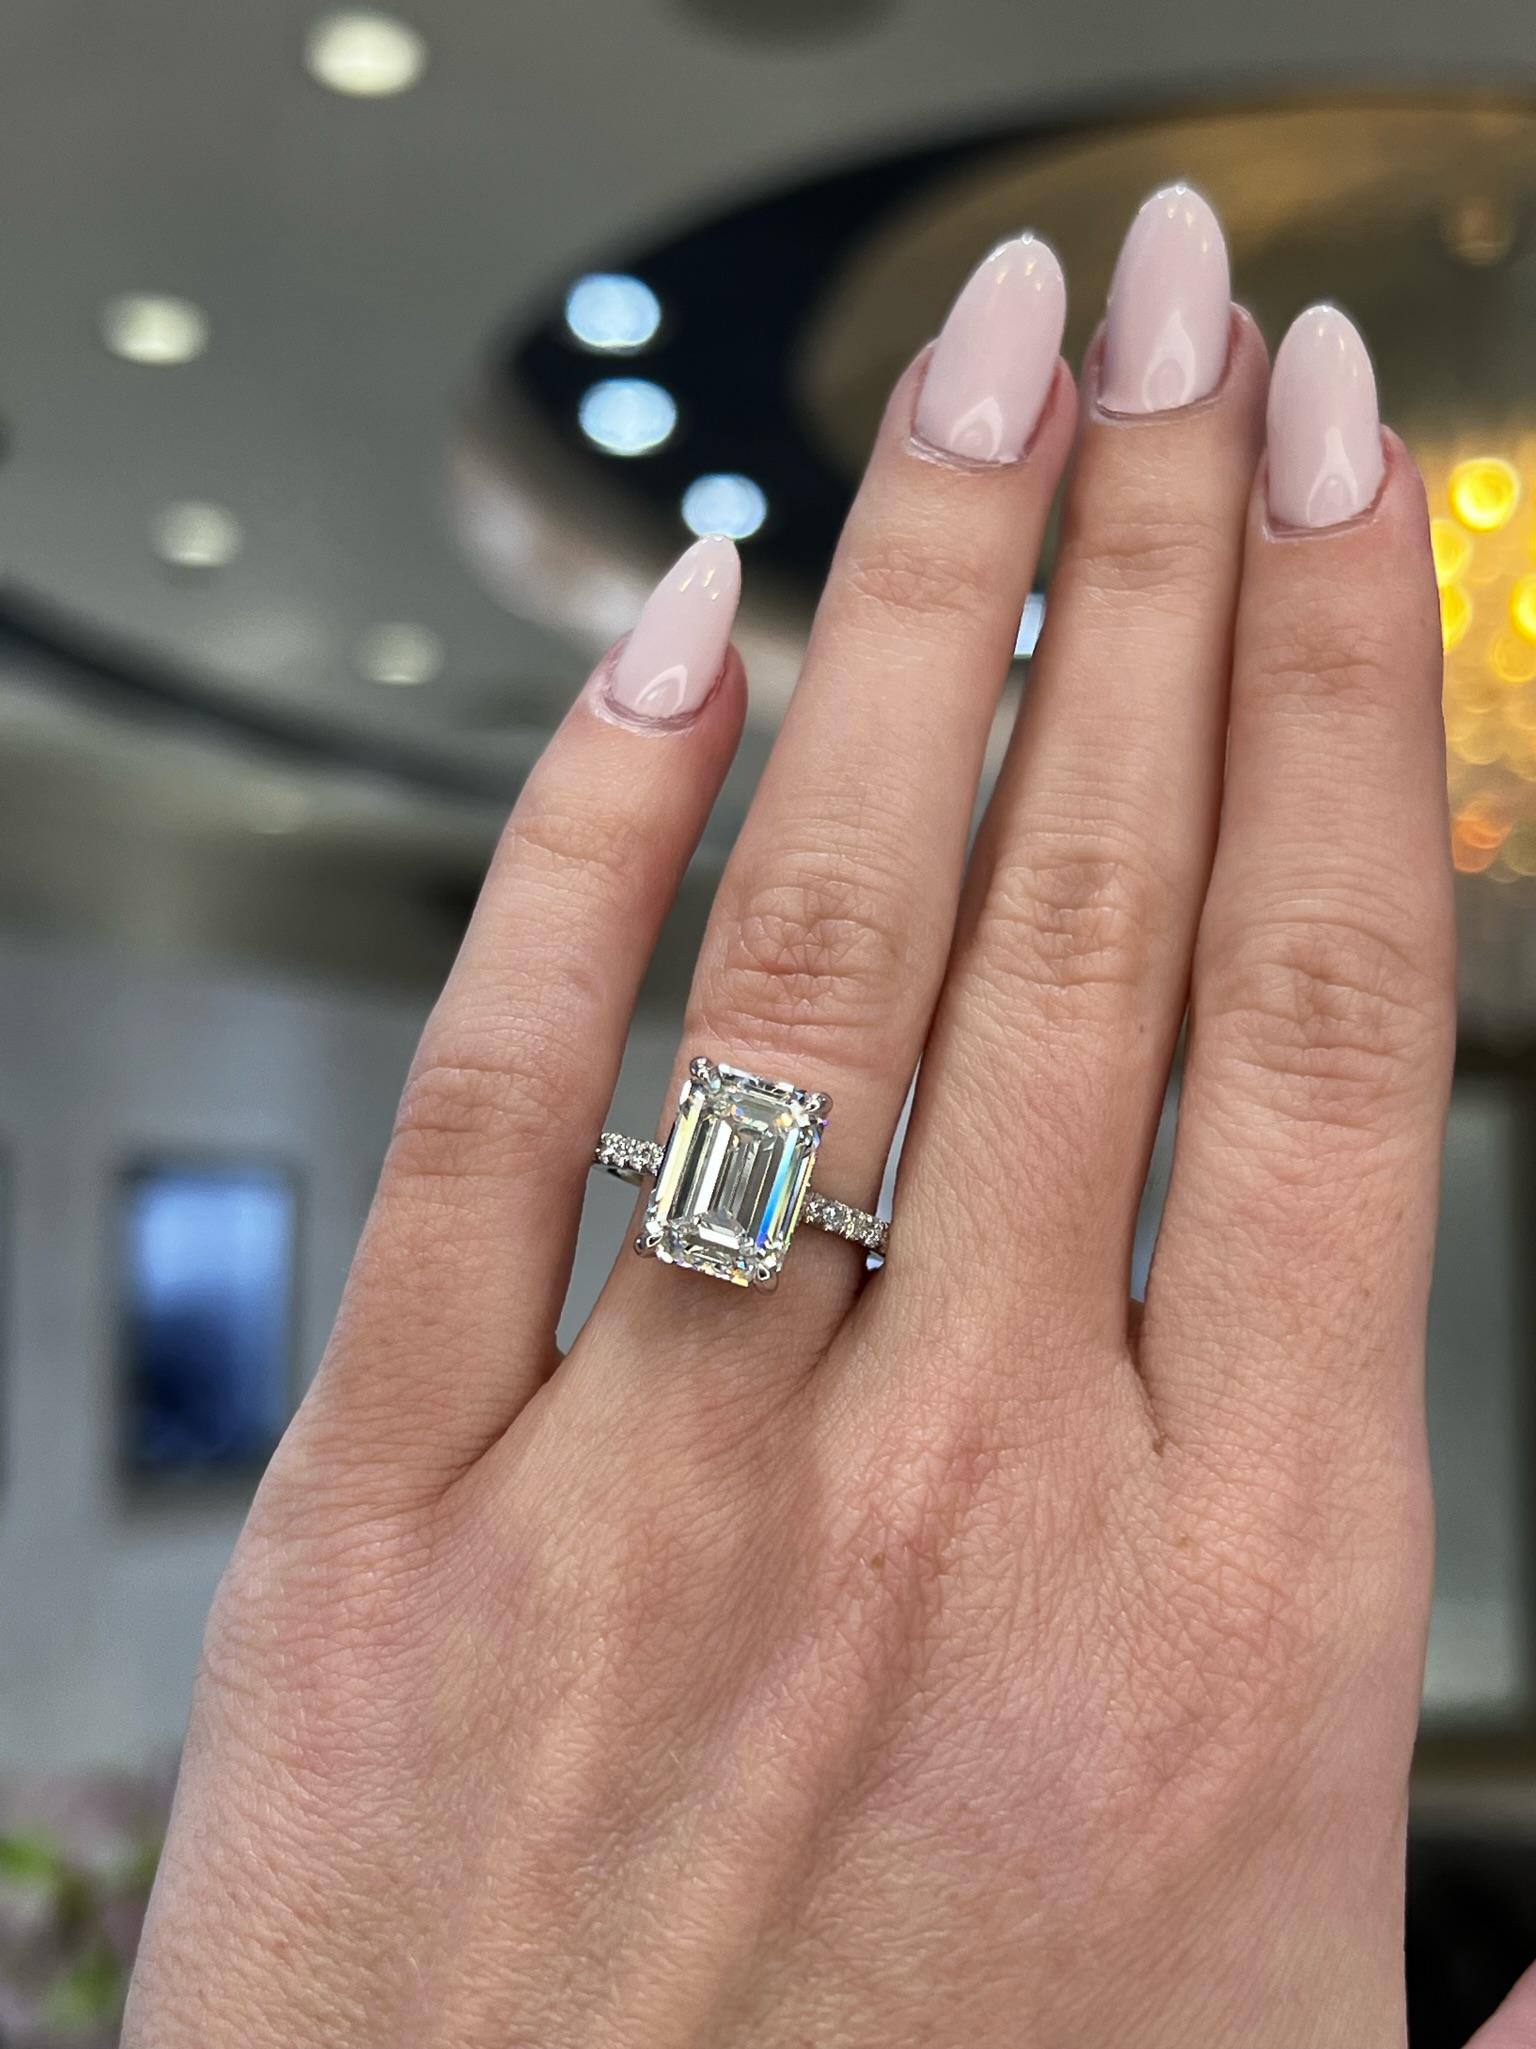 David Rosenberg 5.41 Carat Emerald Cut GIA Diamond Engagement Ring 7